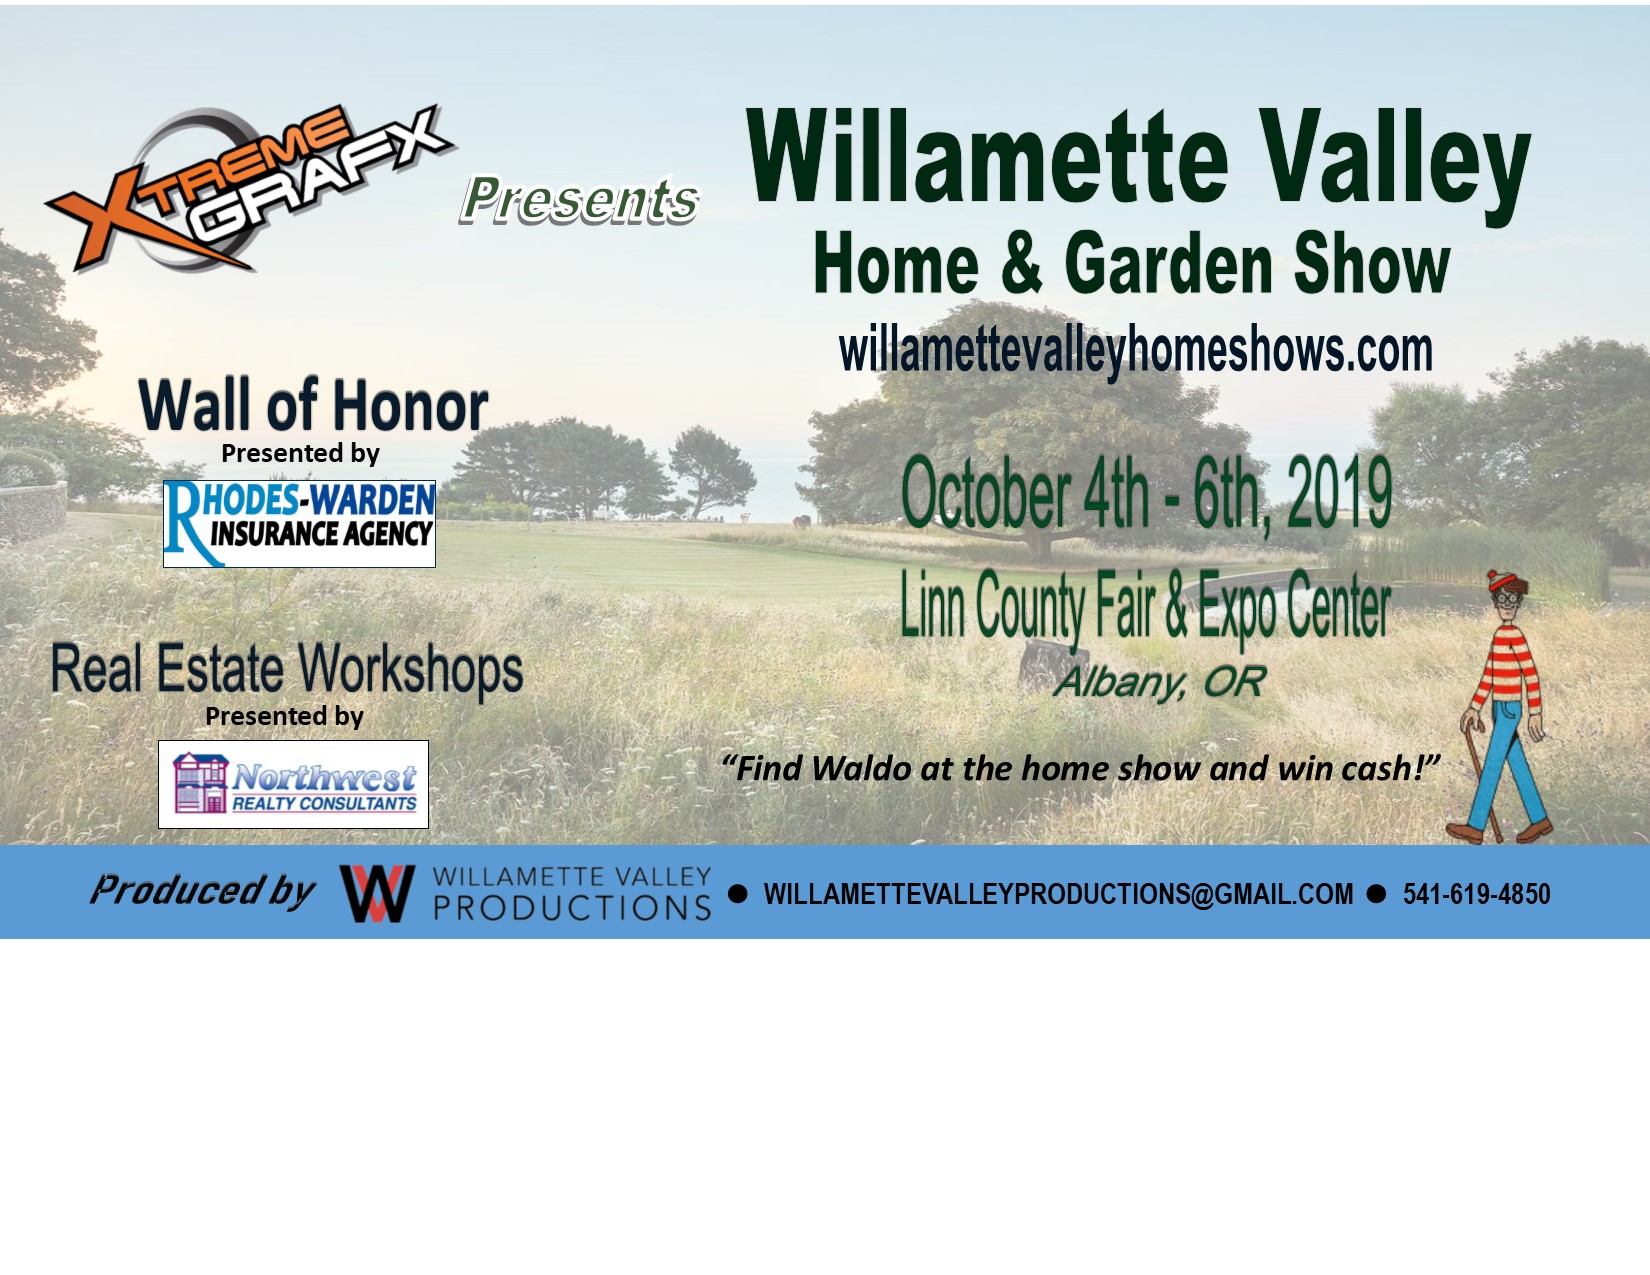 Willamette Valley Home & Garden Show October 4-6, 2019